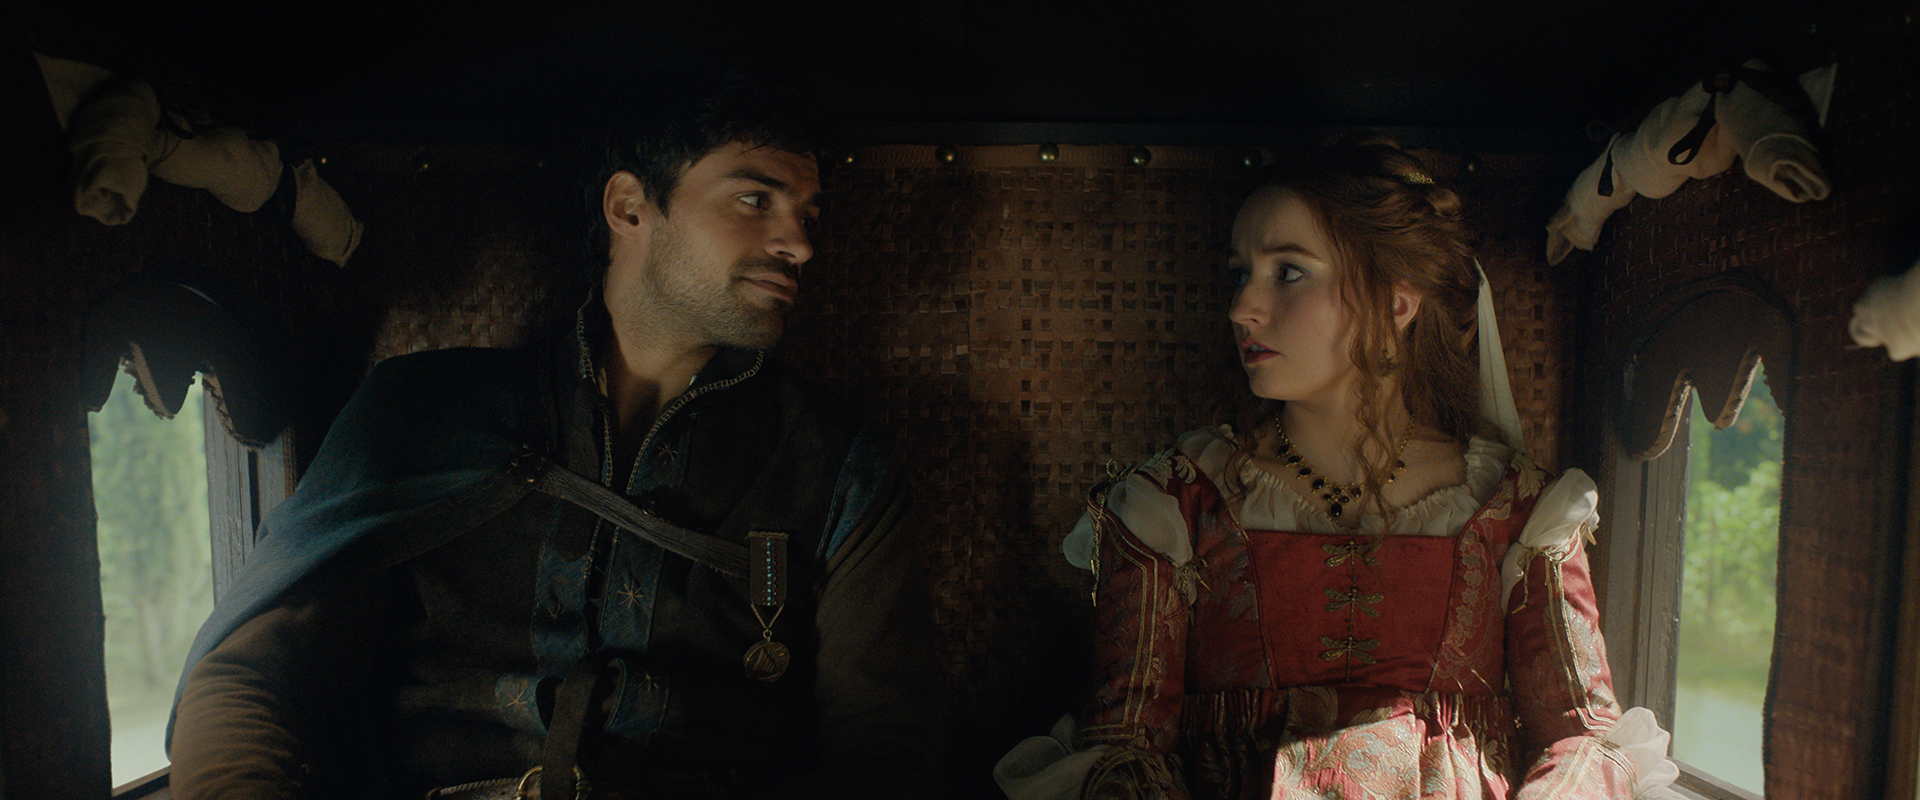 Romeu & Julieta em comédia romântica: Assista ao trailer de “Rosalina”